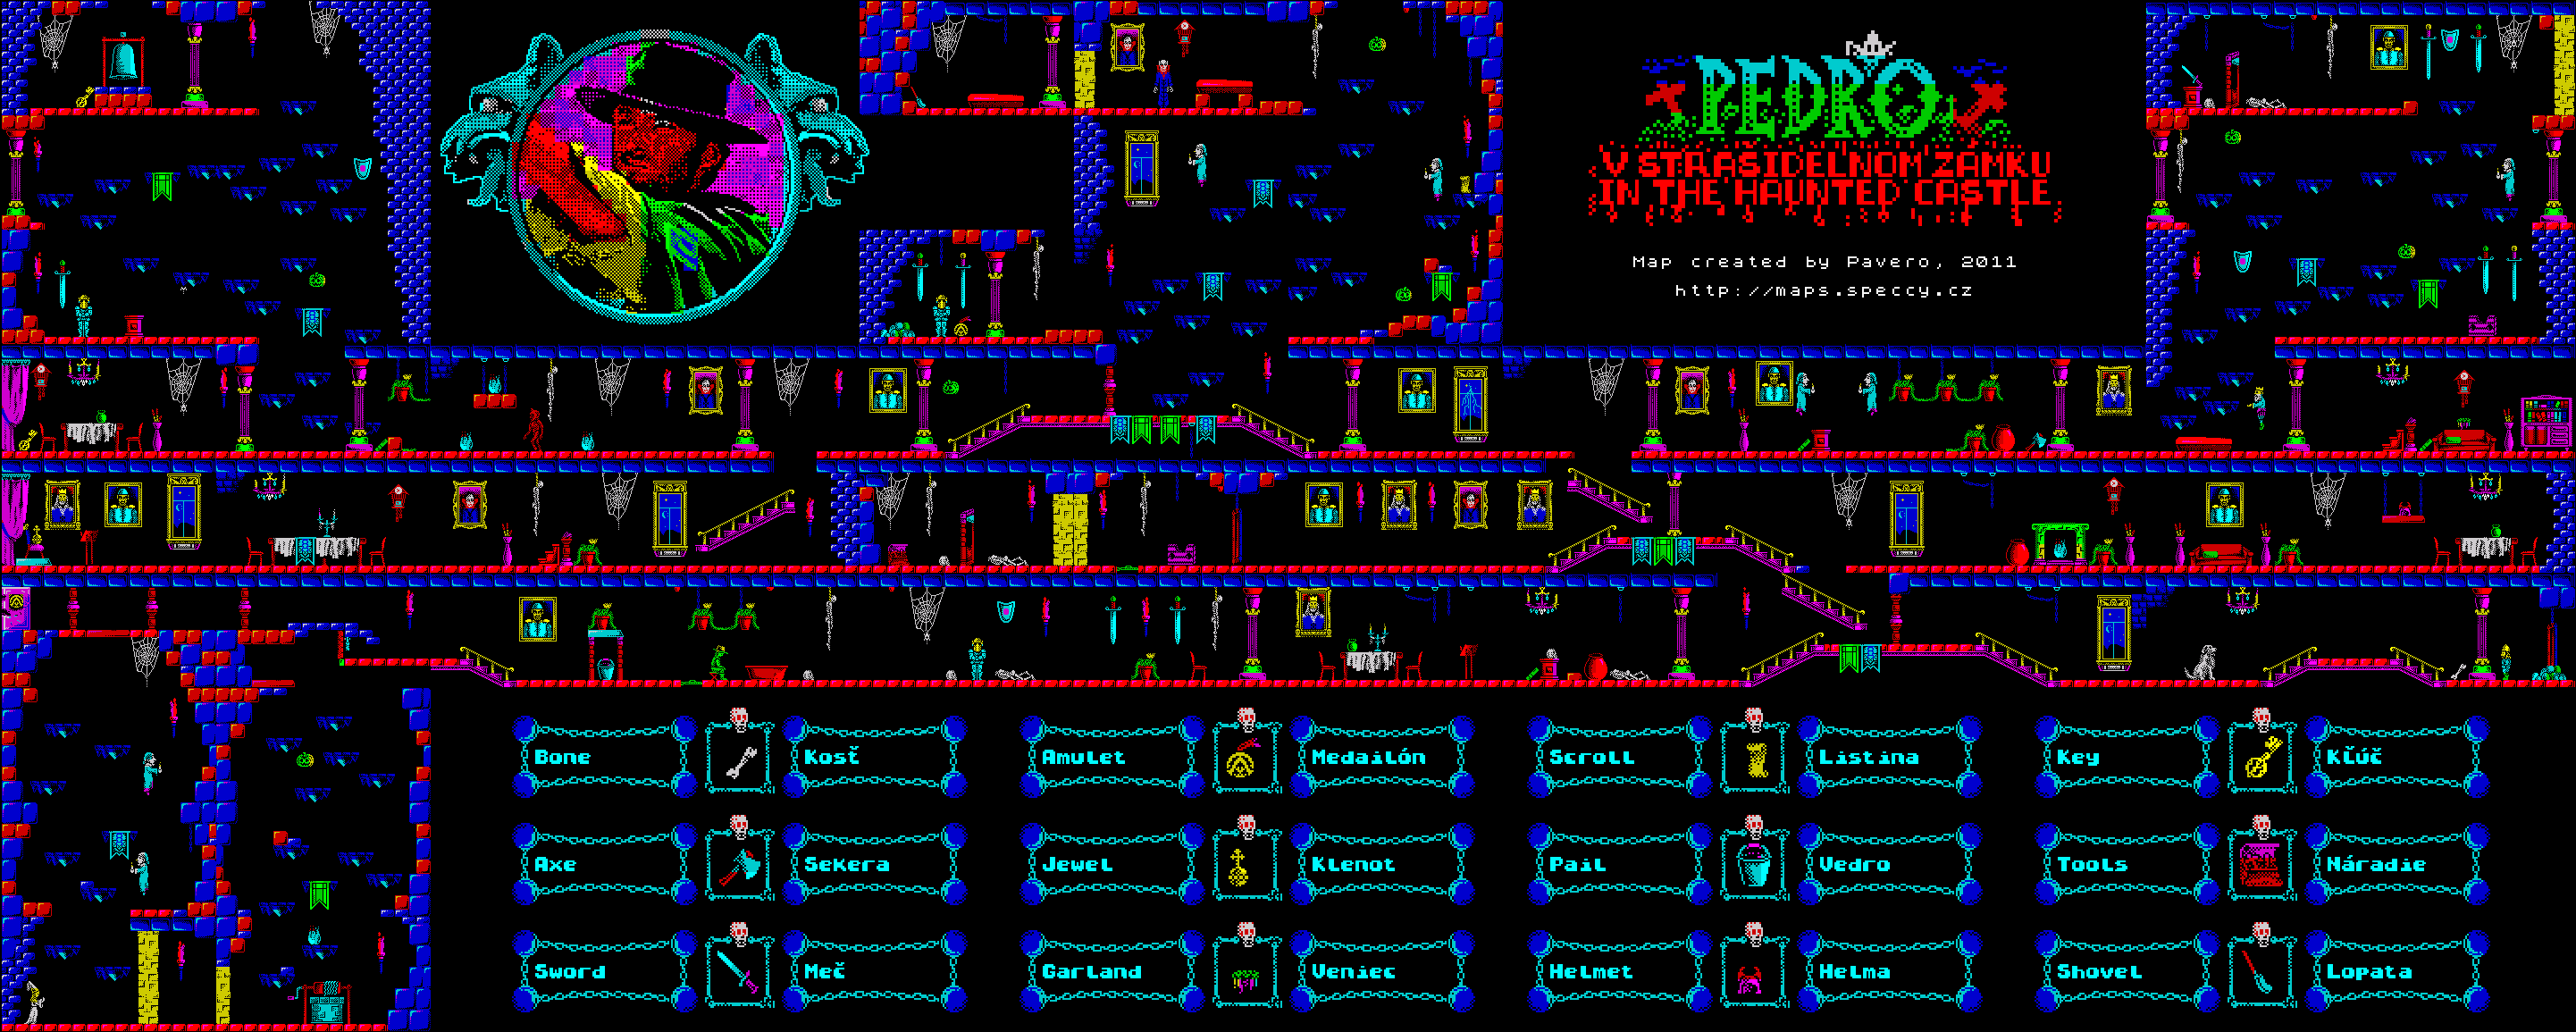 Pedro 2 - Pedro v strašidelnom zámku - The Map